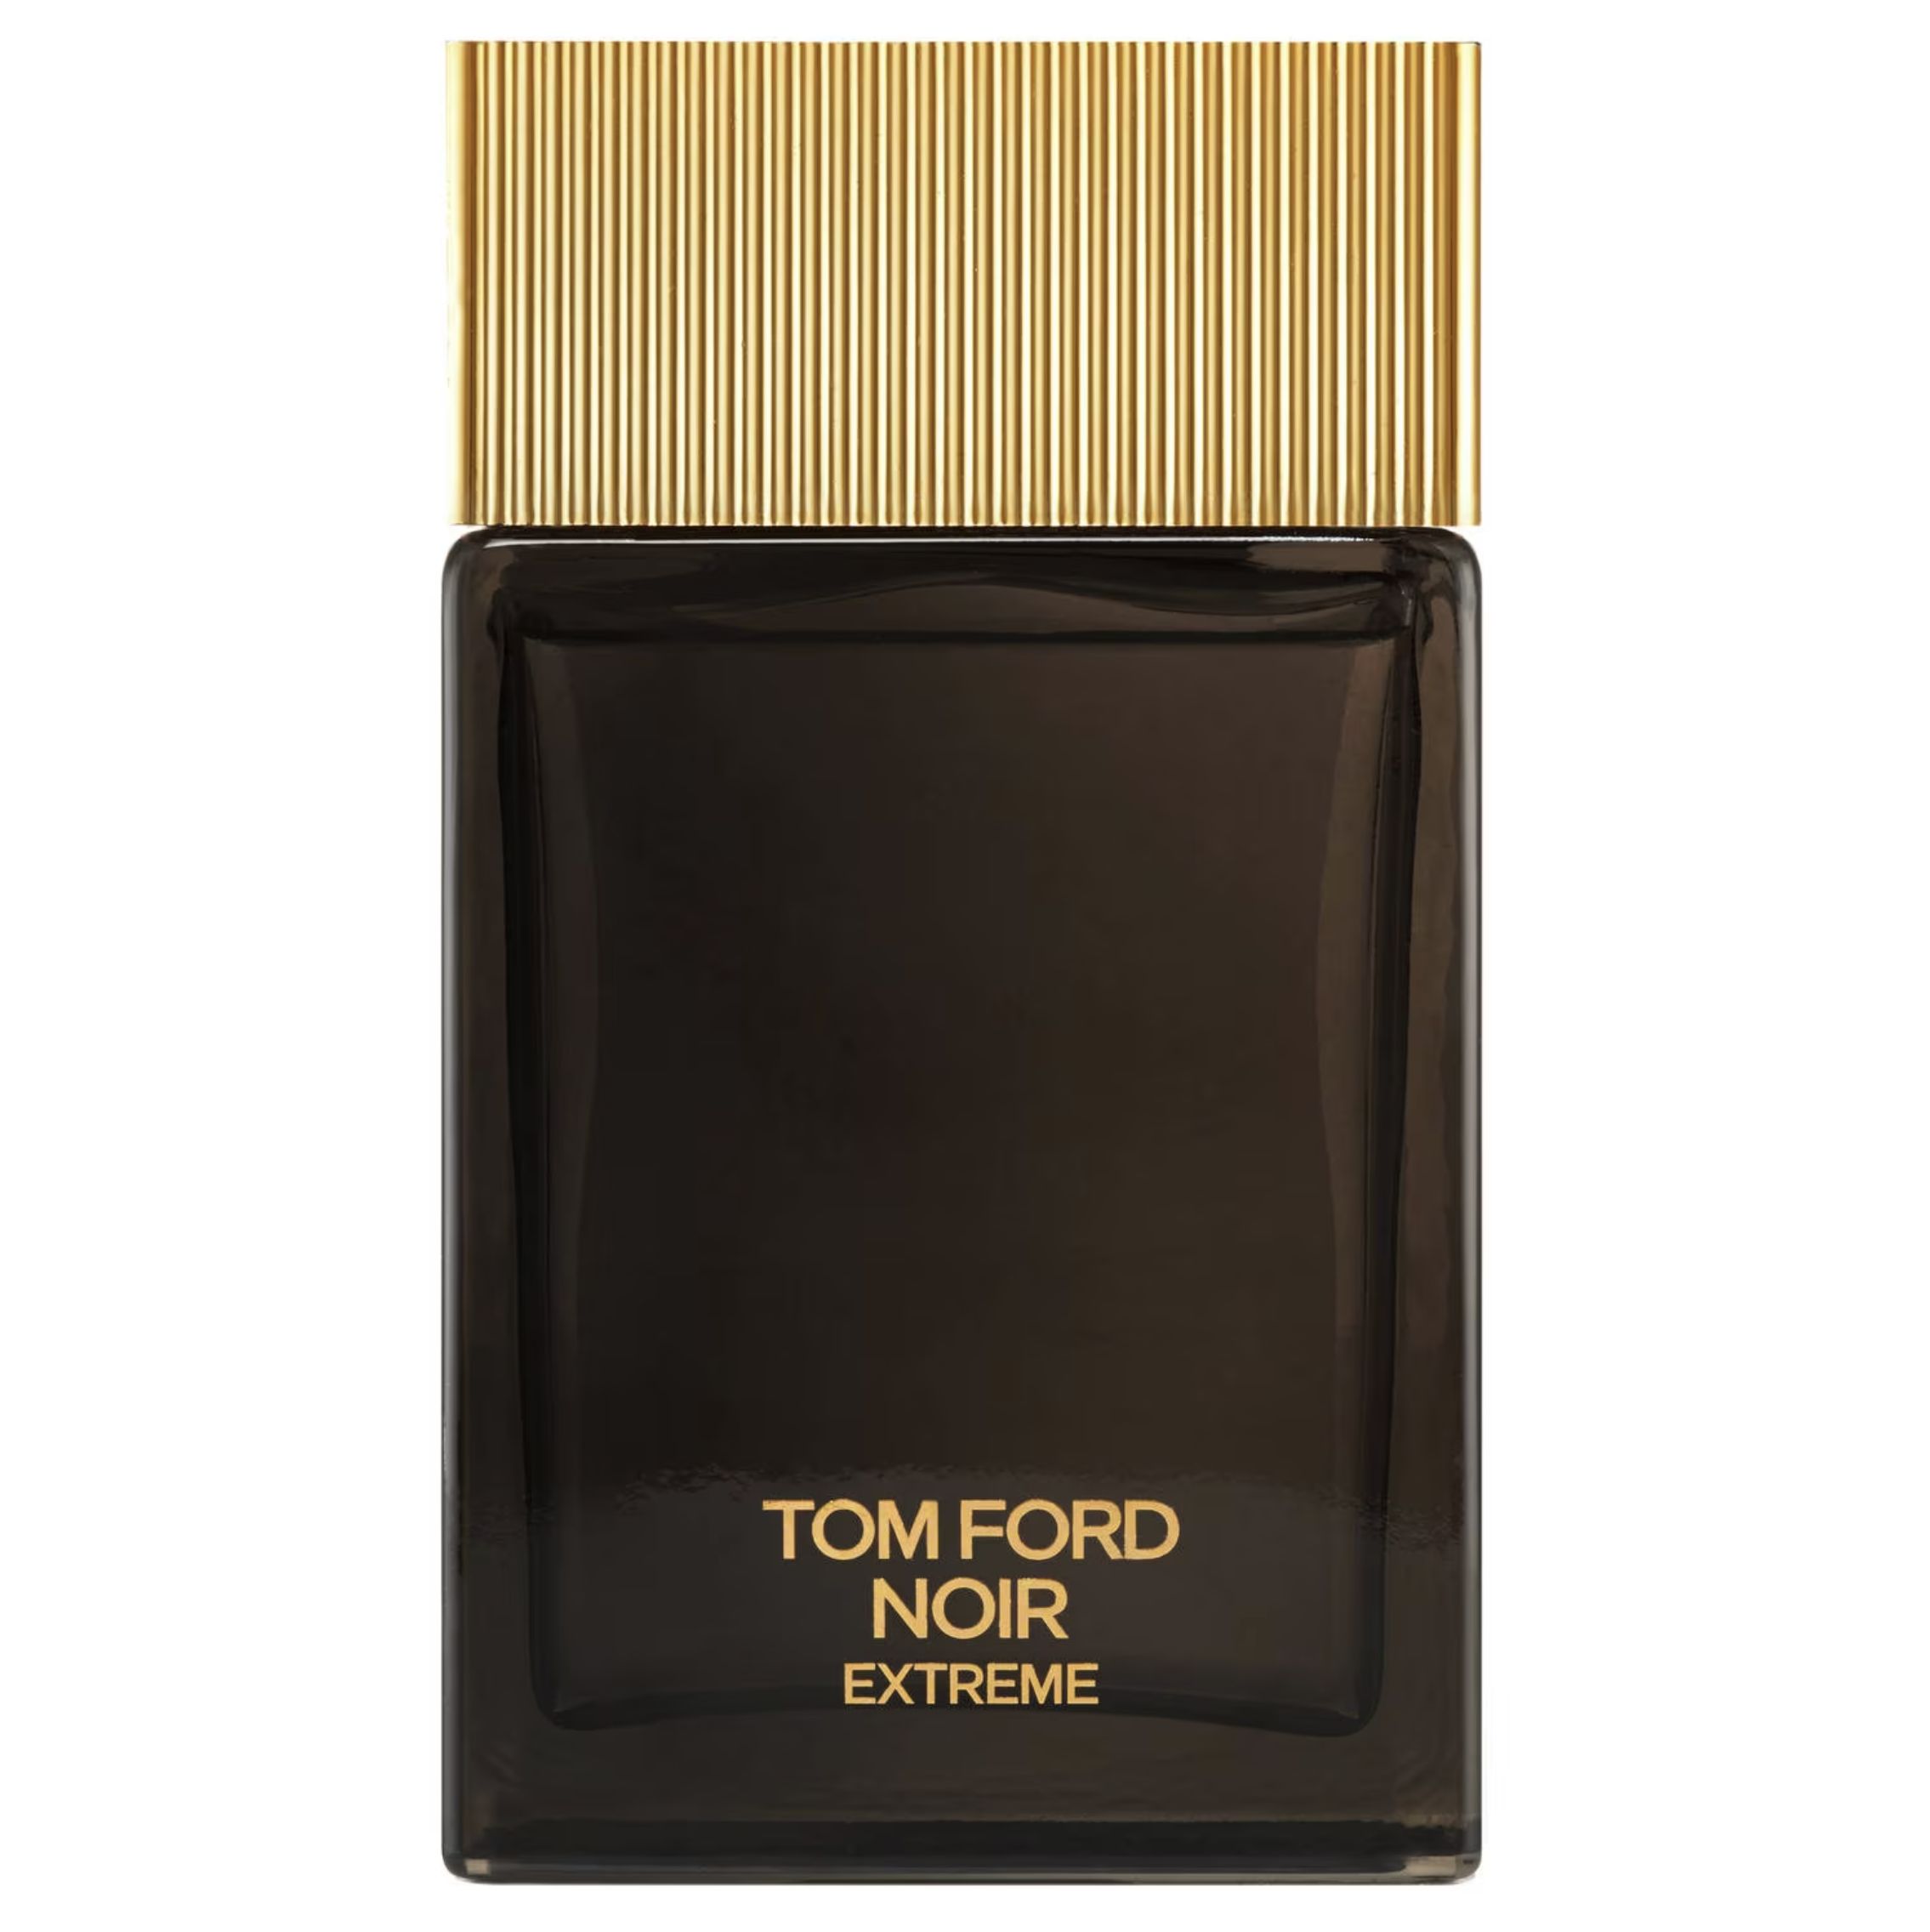 Tom ford купить мужские. Tom Ford Noir extreme 100ml. Tom Ford Noir extreme 100ml EDP. Tom Ford Noir men 100ml EDP. Tom Ford Noir 100ml EDP.